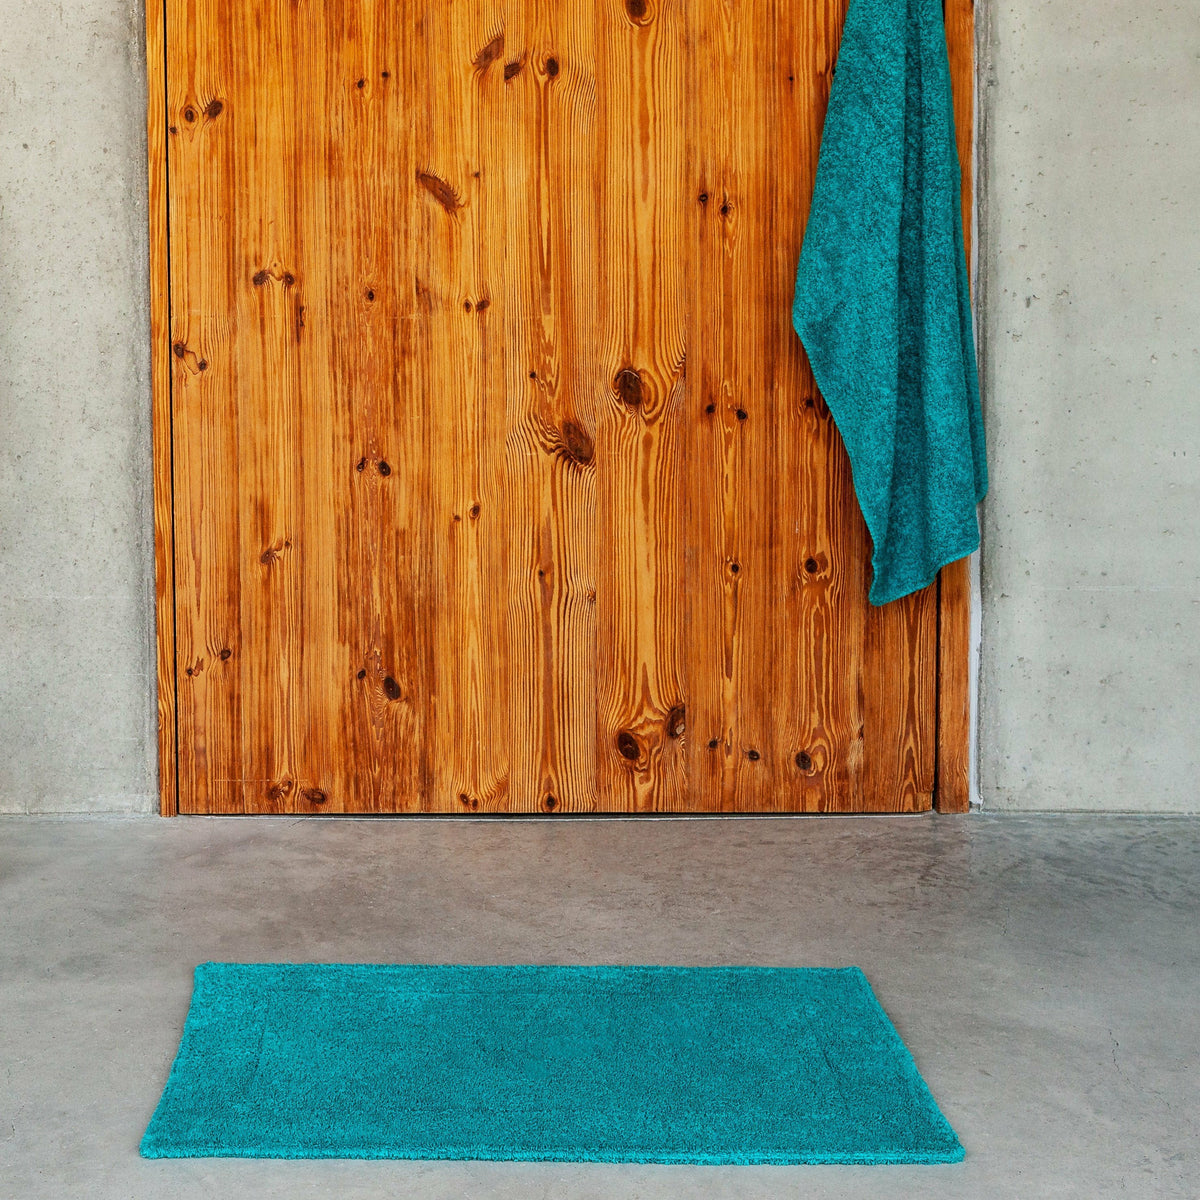 Abyss Super Pile Towels - Bath Sheet Towel 40x72 Cadette Blue 332